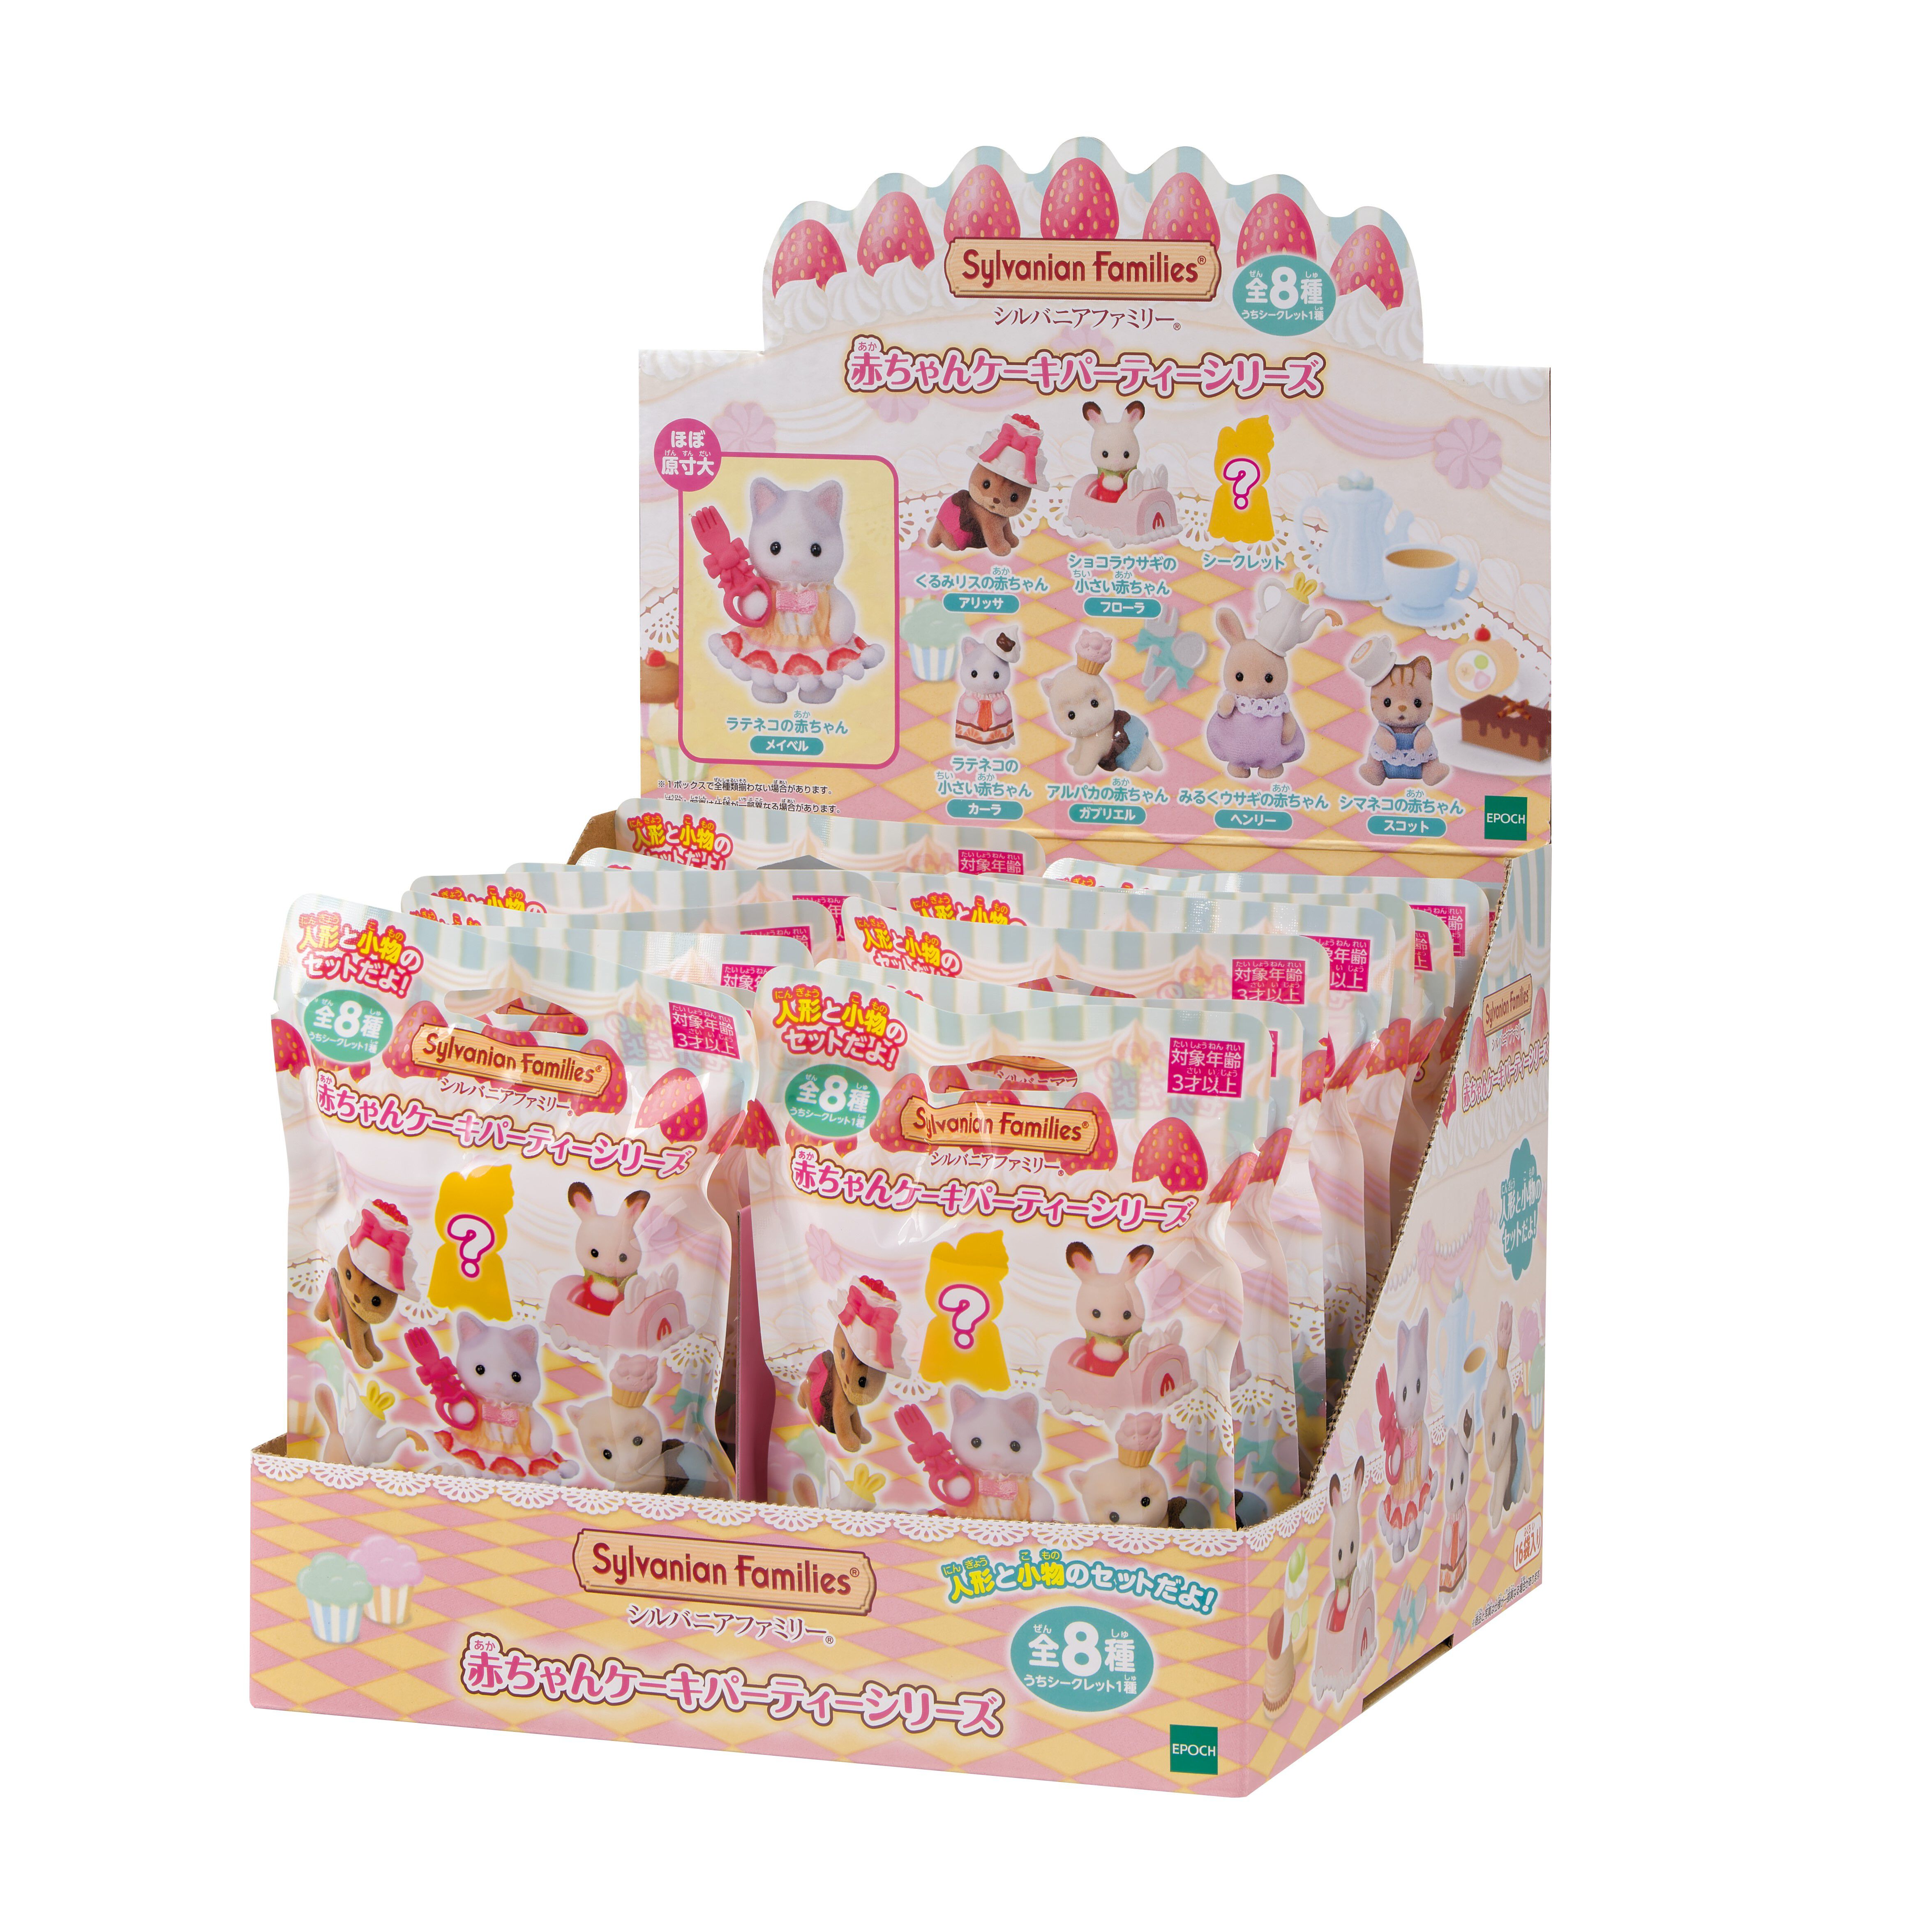 赤ちゃんコレクション-赤ちゃんケーキパーティーシリーズ- Box 